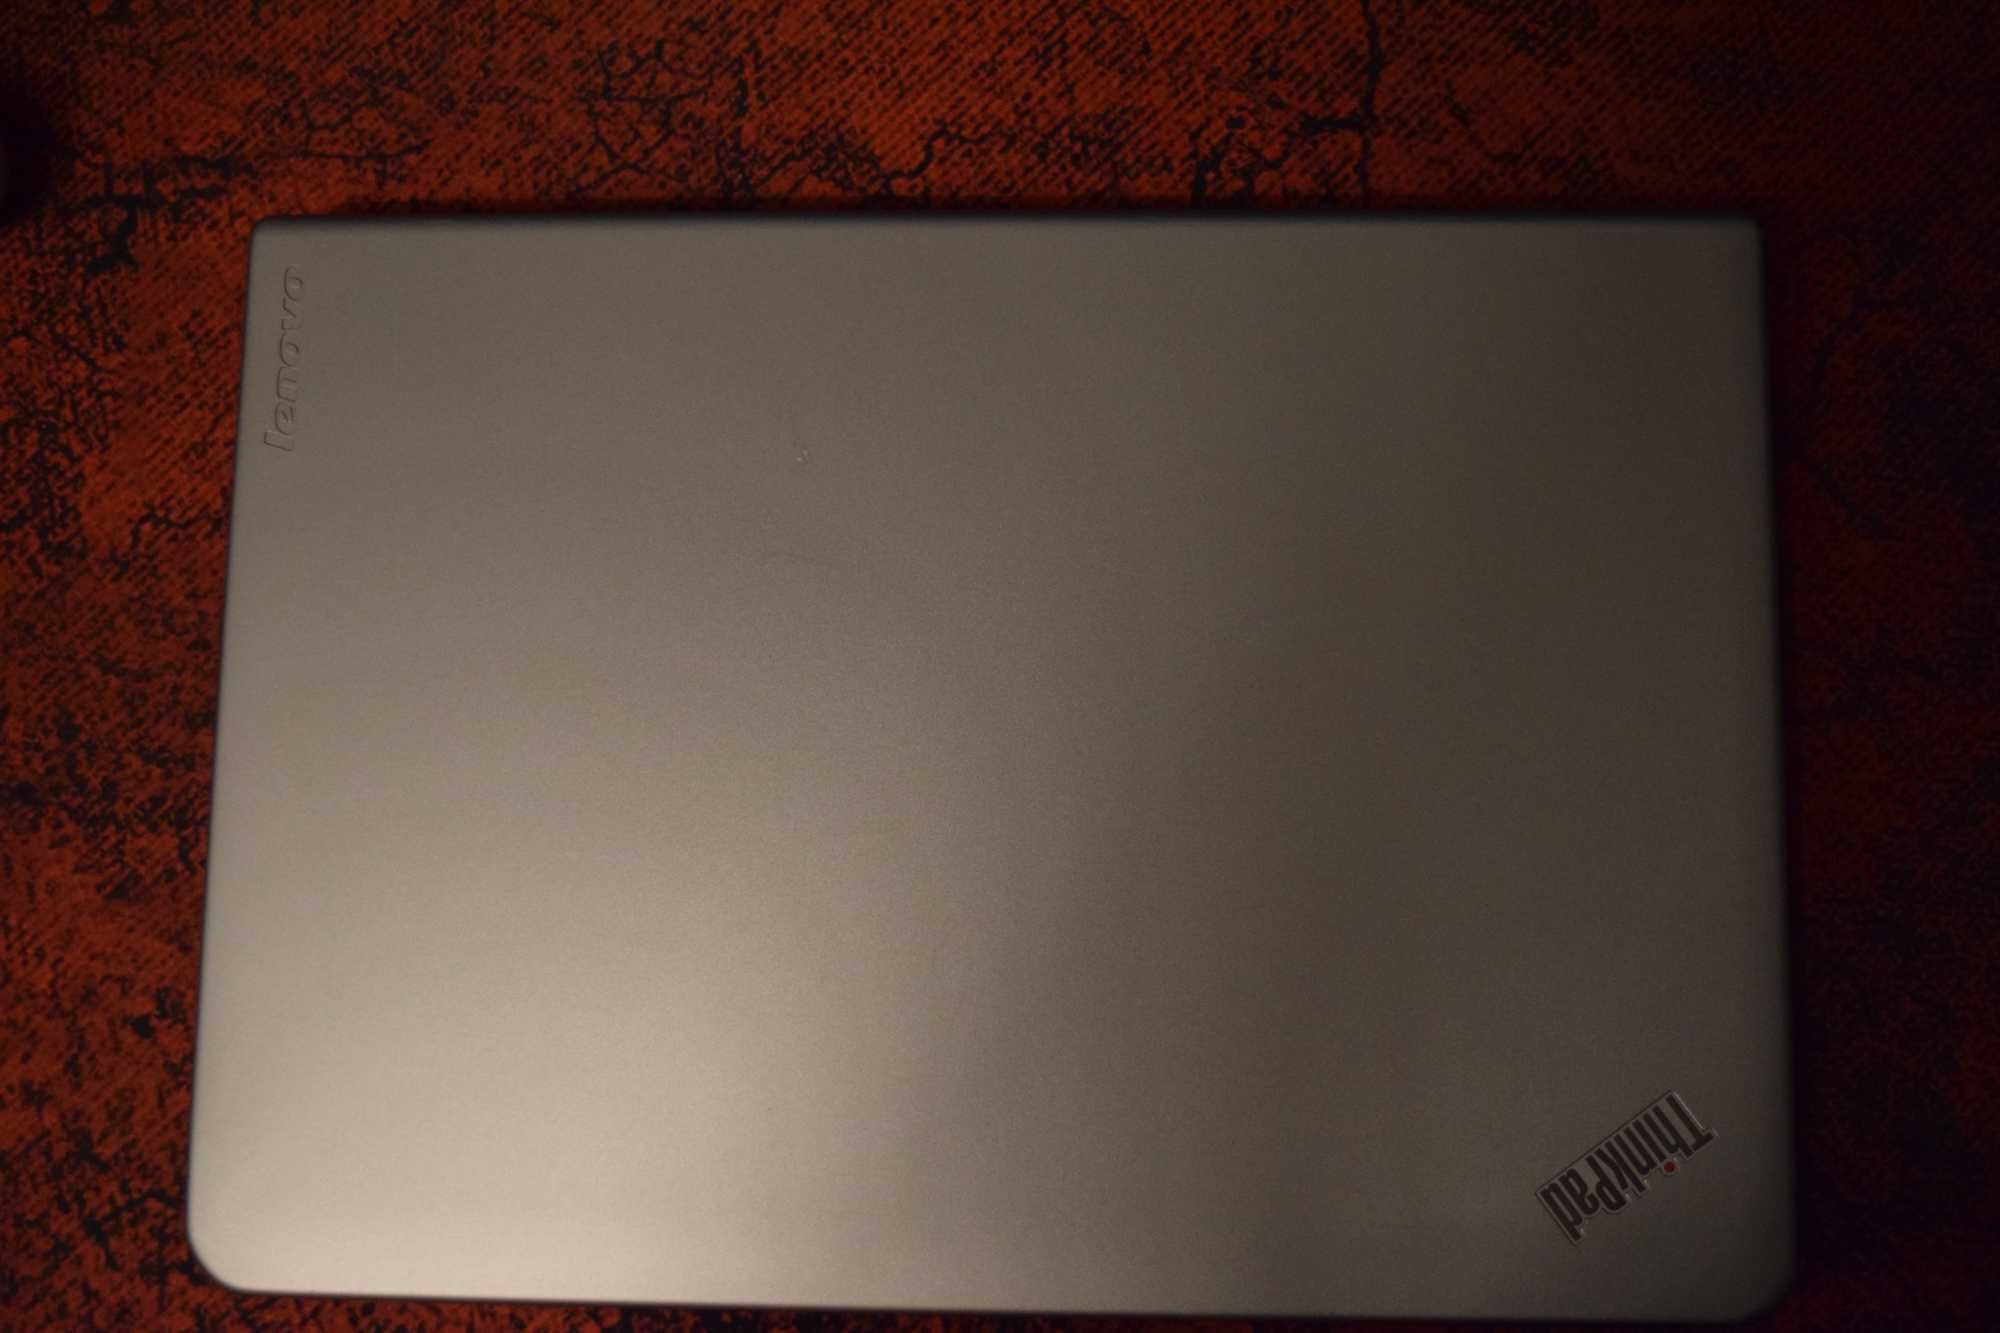 Lenovo ThinkPad E460 14 инча